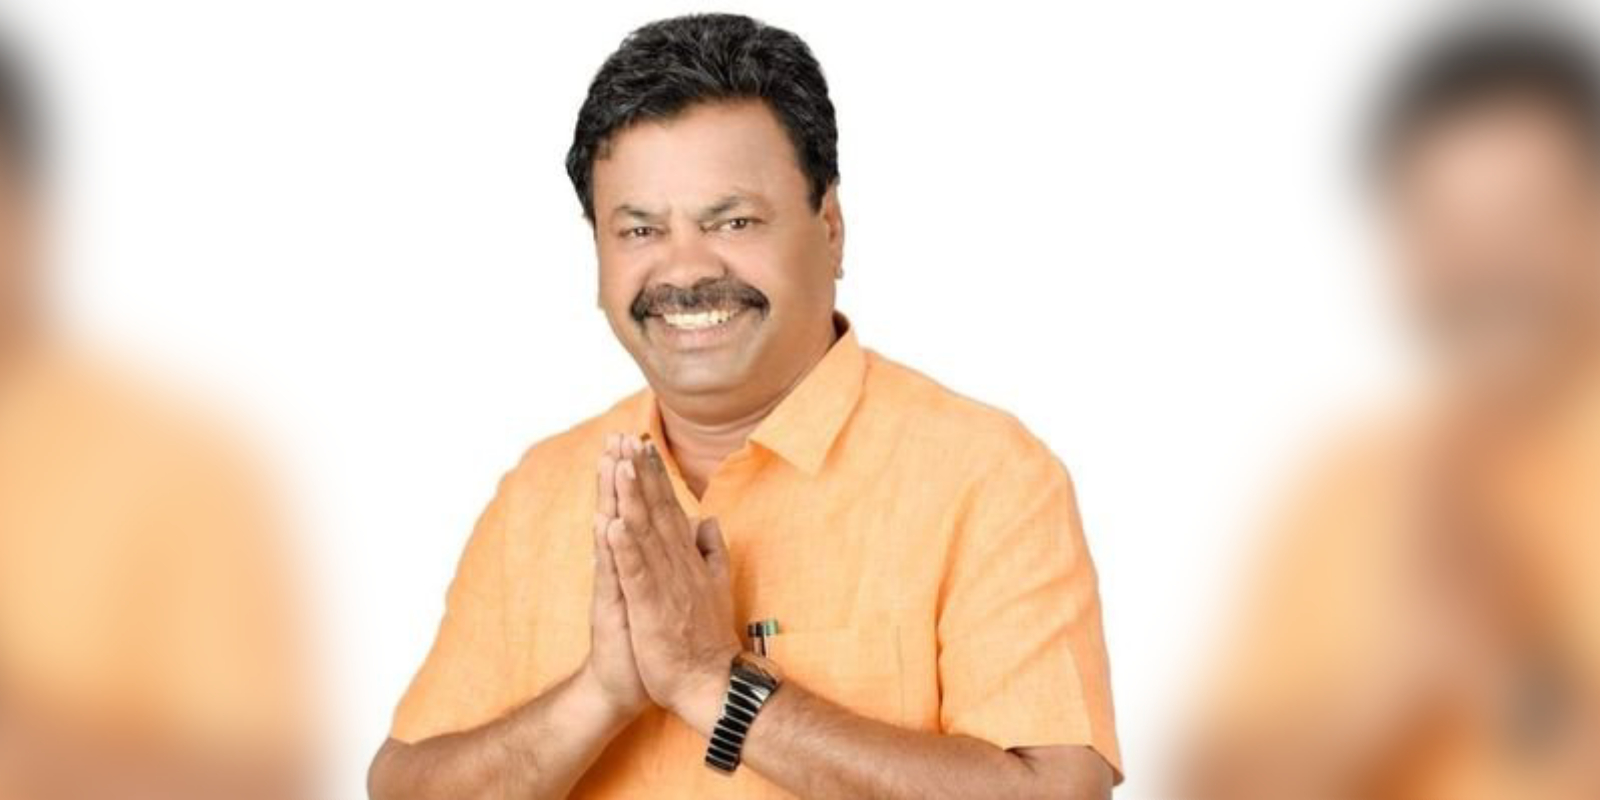 Renukacharya Karnataka BJP infighting